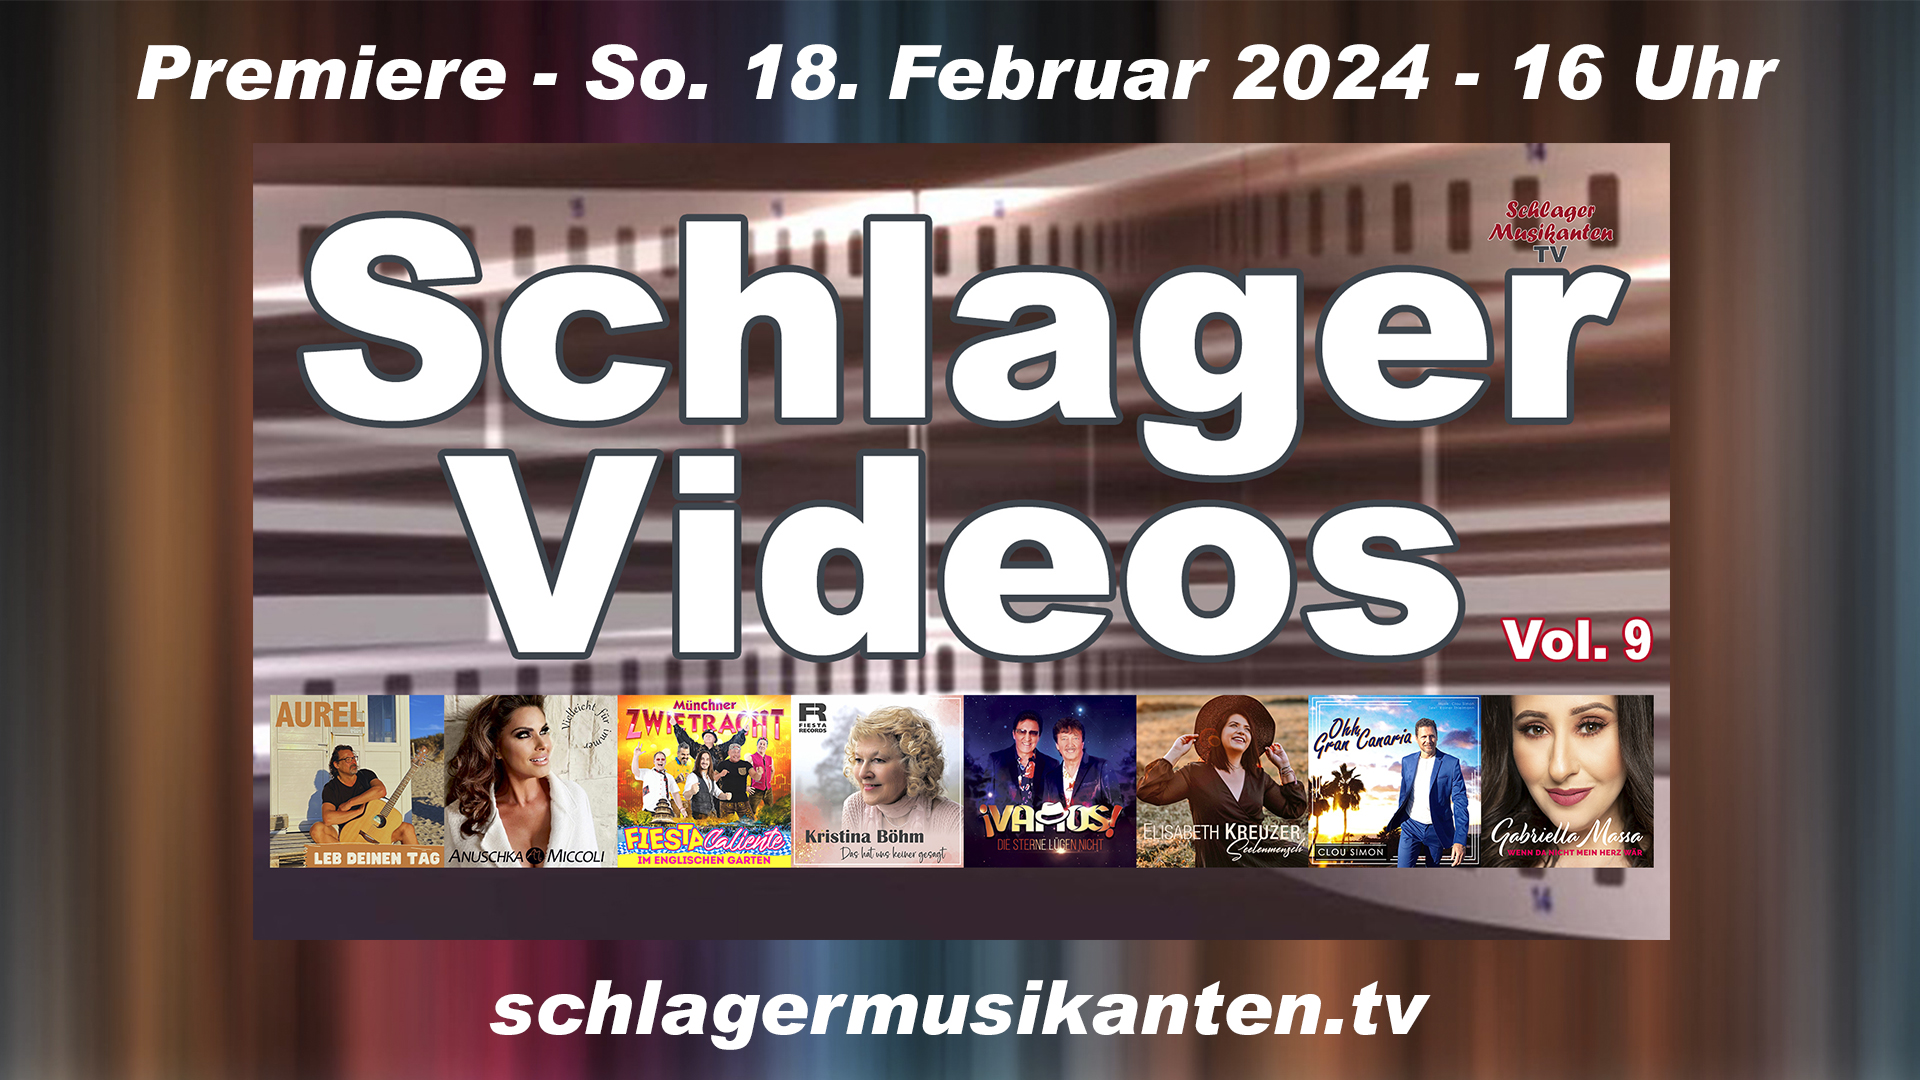 Premiere "Schlager Videos" Vol. 9 exklusiv im Schlager Musikanten TV